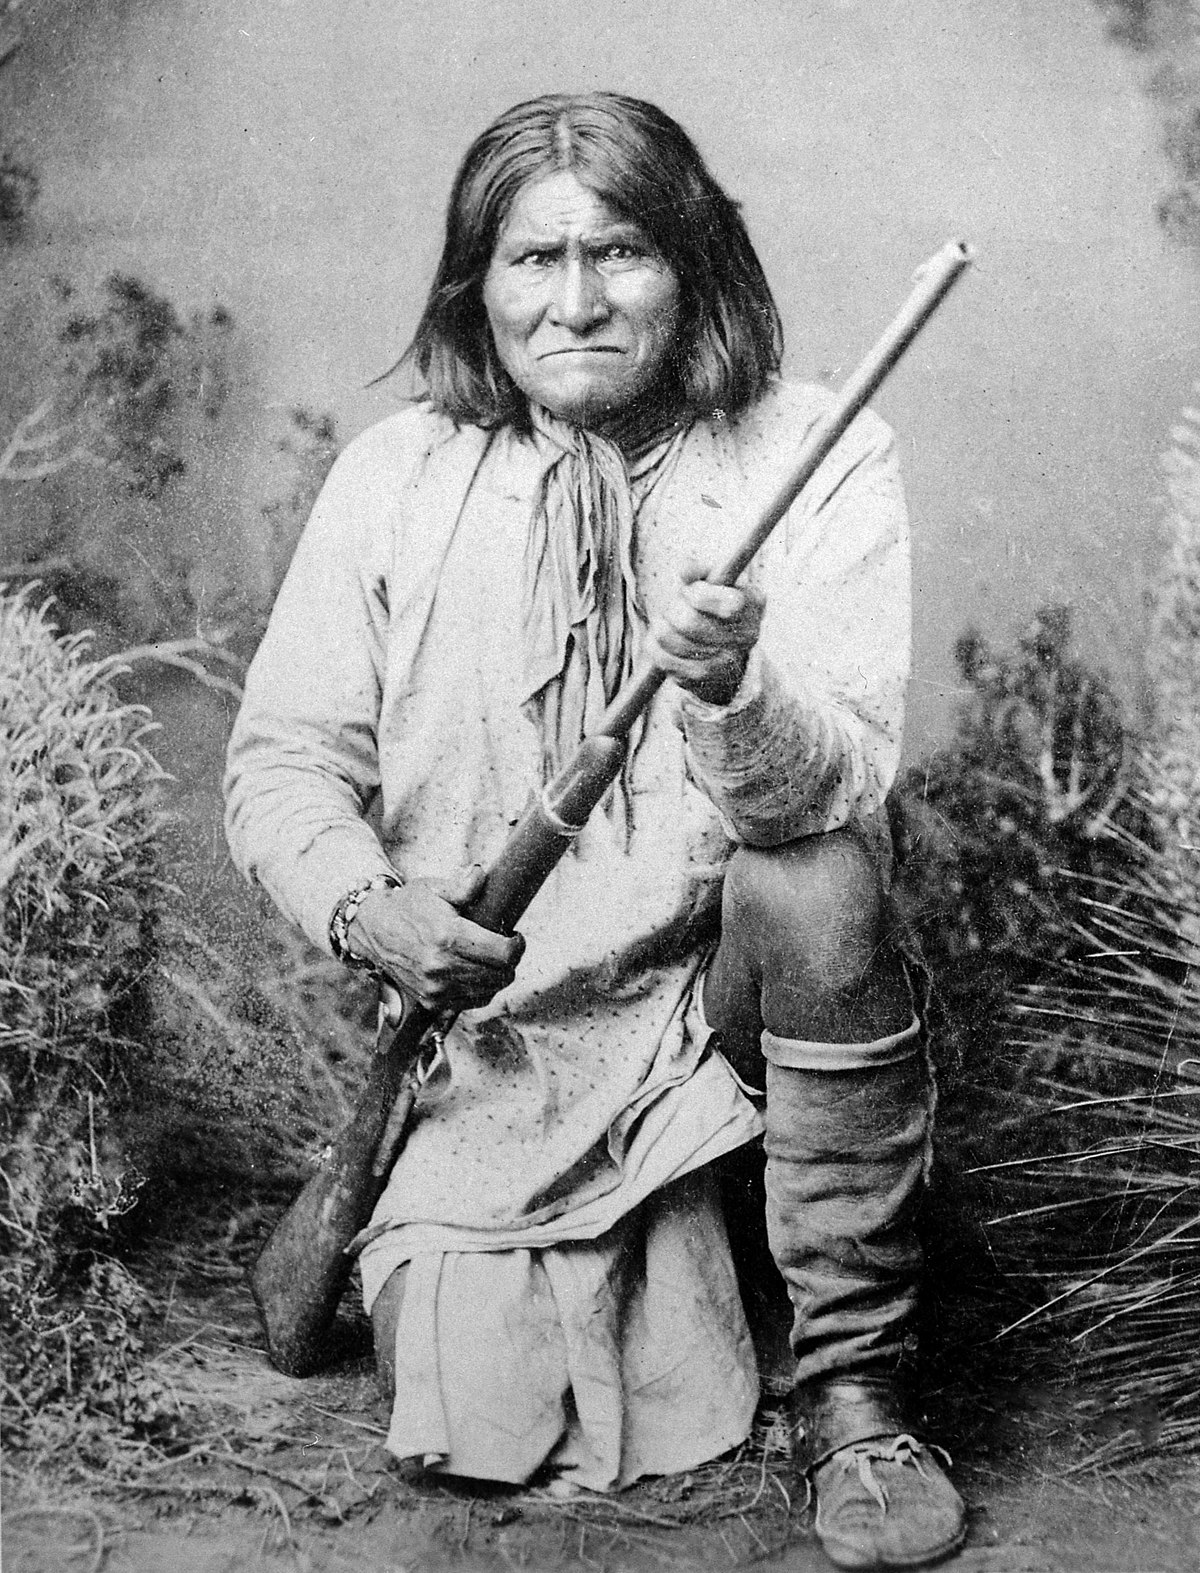  Biografio kaj historio de Geronimo